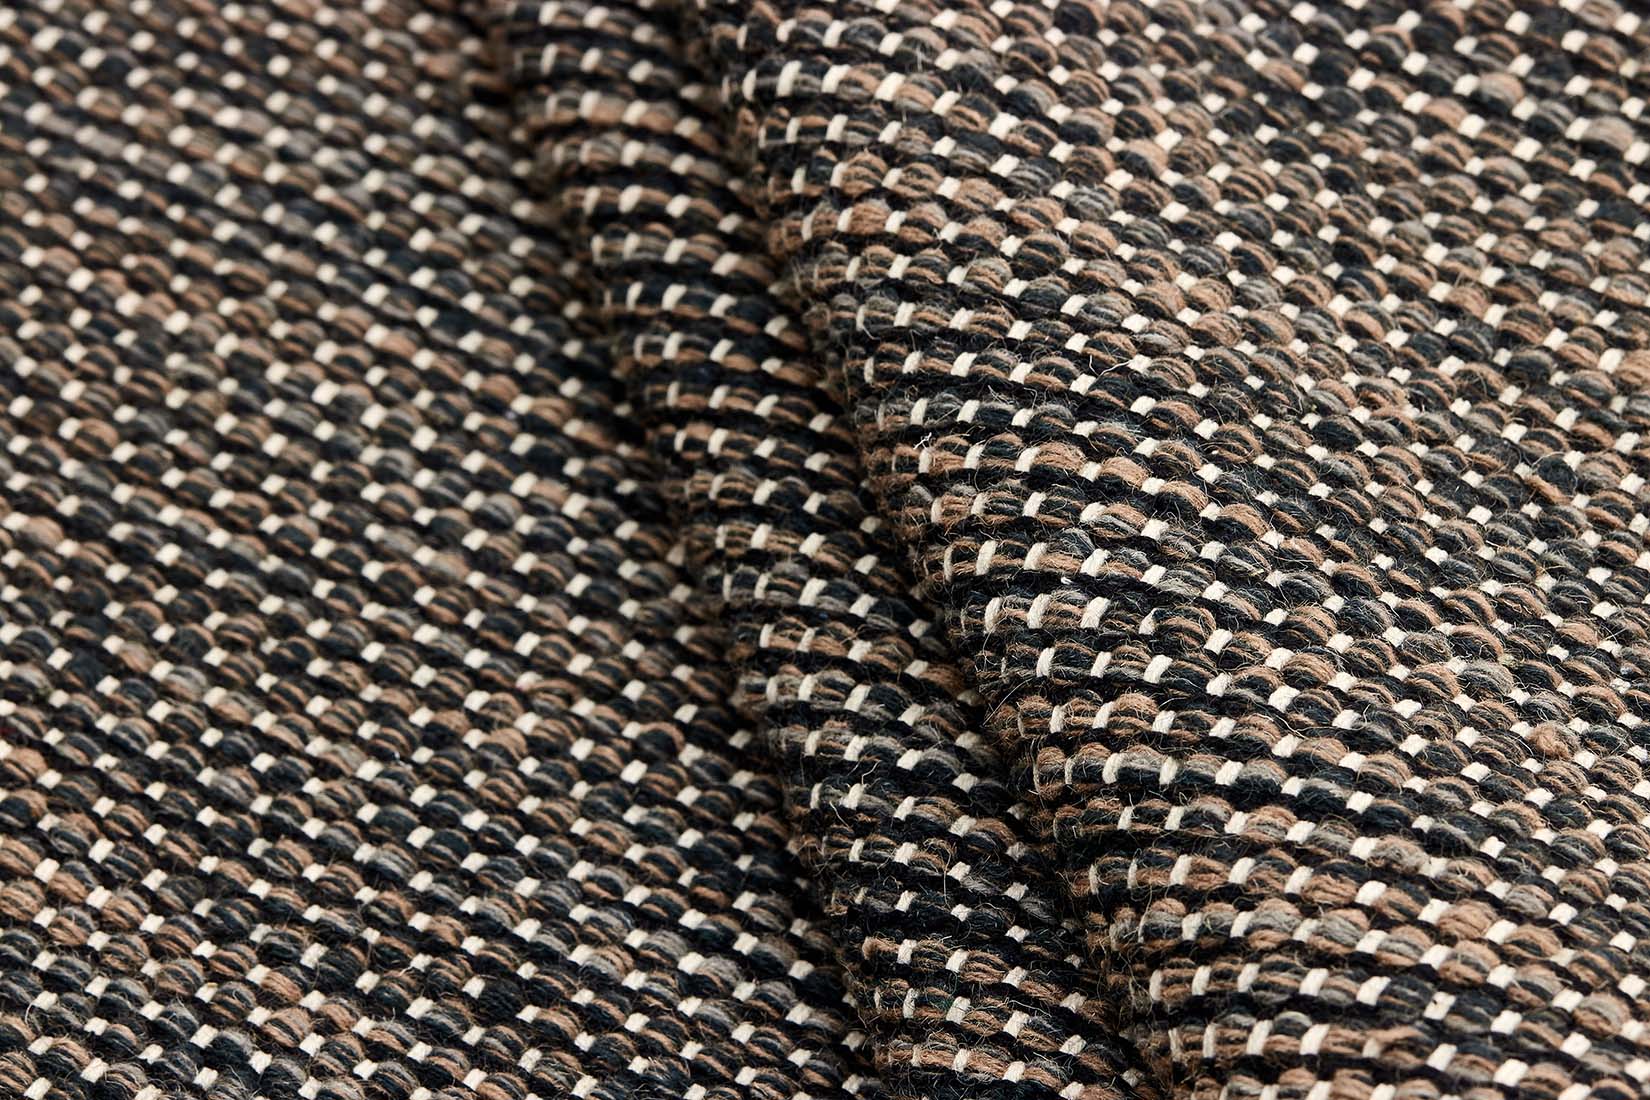 plain brown flatweave wool rug
